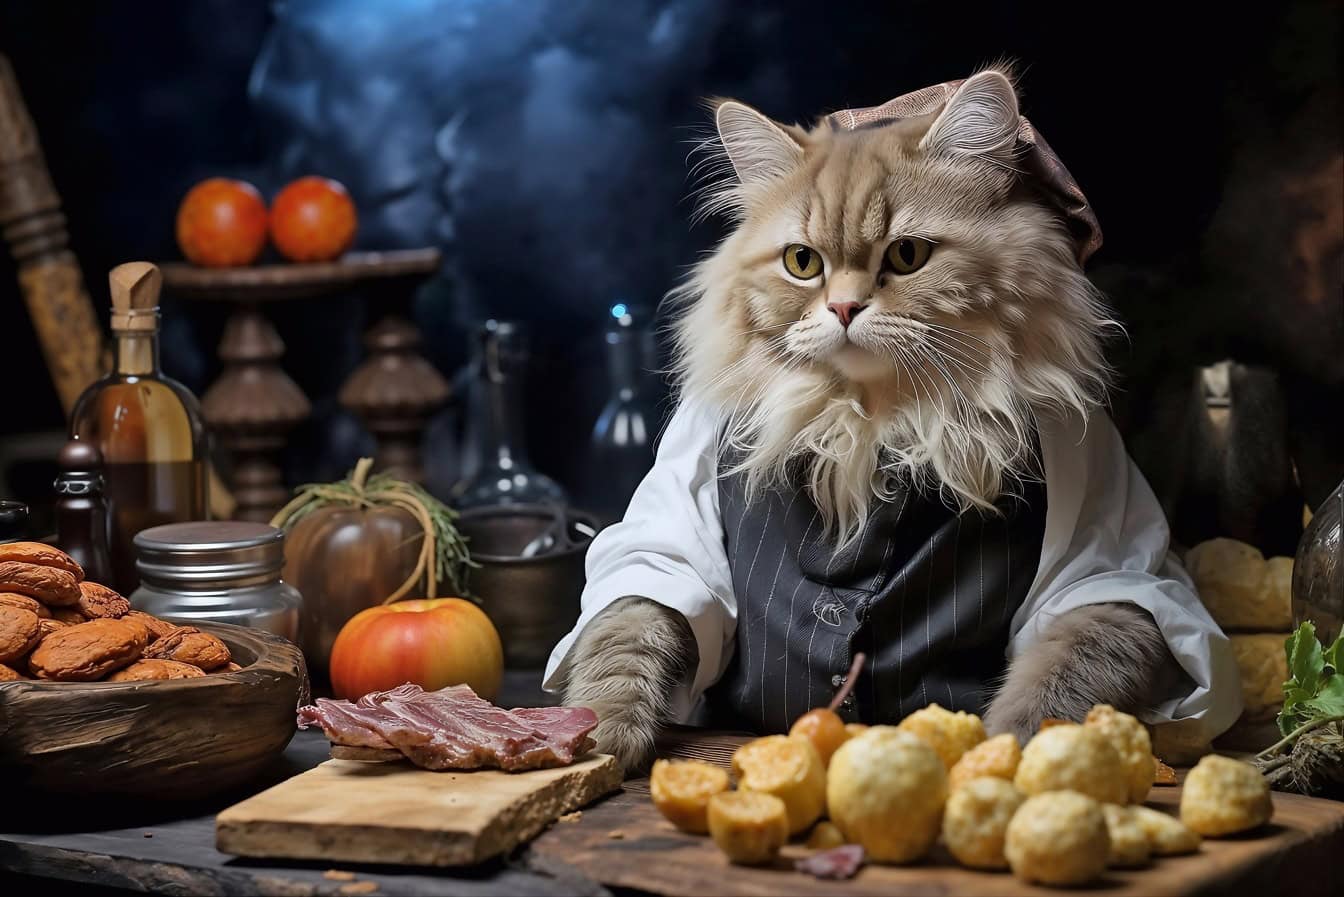 식료품과 함께 부엌 테이블에서 양복을 입은 고양이 요리사의 재미있는 사진 몽타주